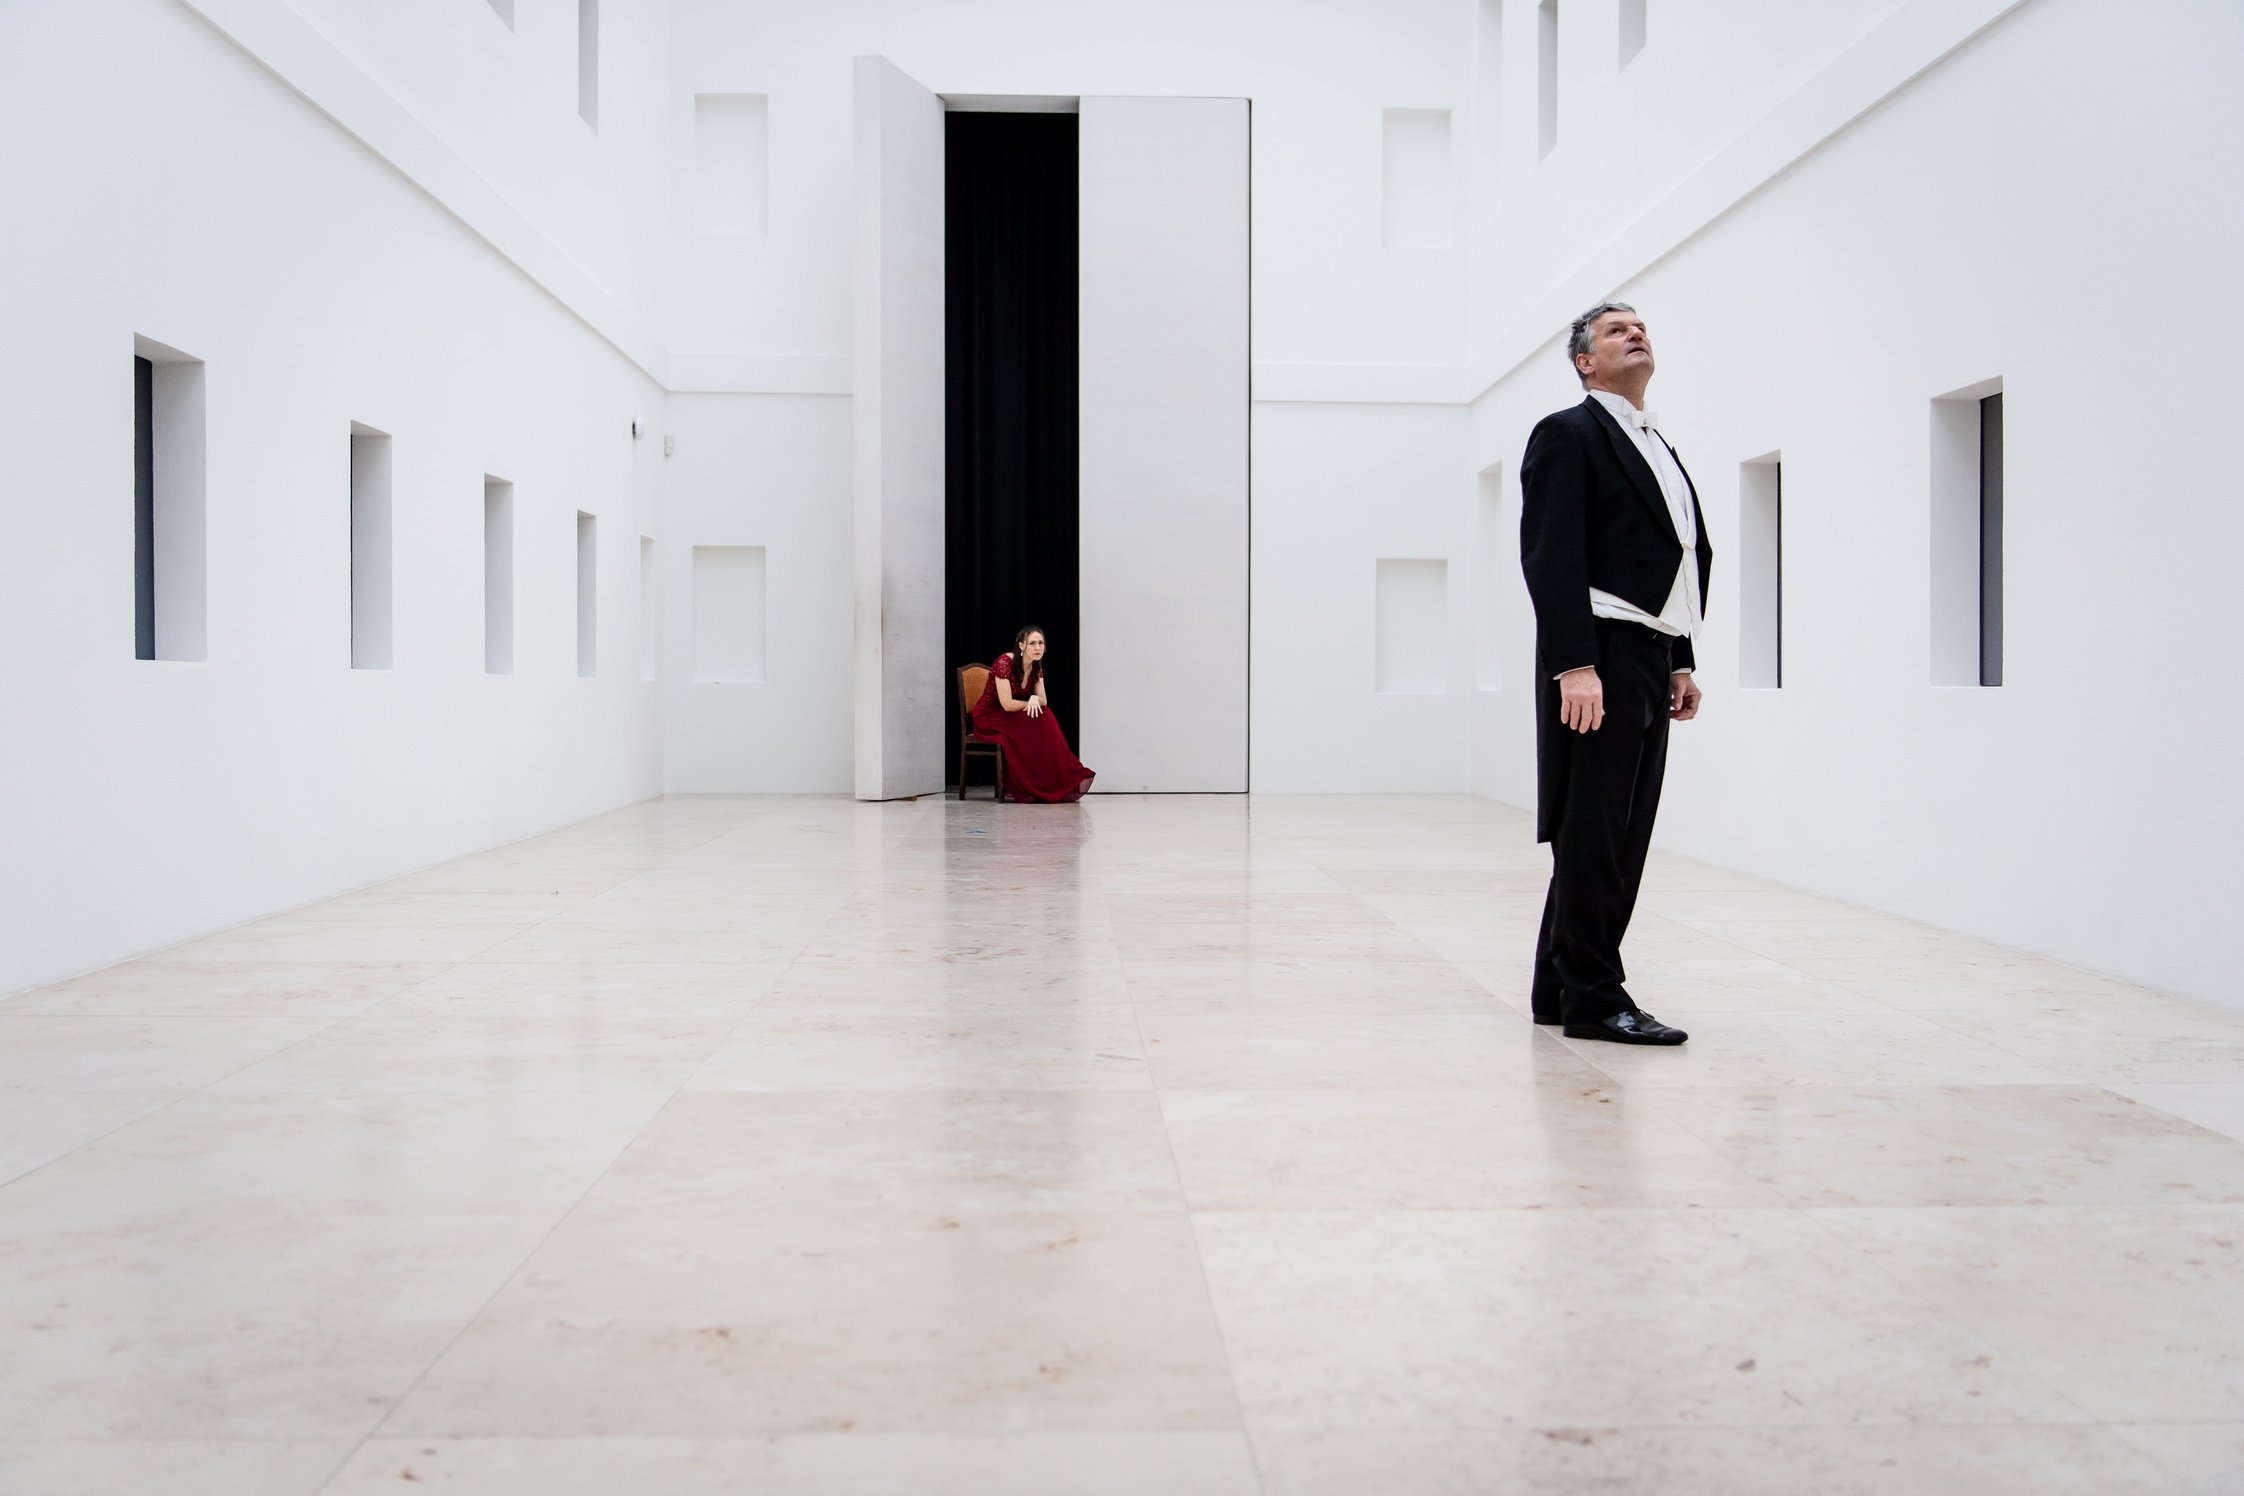 Weißer Innenhof des Pommerschen Landesmuseums. In der Tür im Hintergrund sitzt eine Frau in rotem Kleid auf einem Stuhl. Im Vordergrund rechts ein stehender Herr im Frack, welcher nach oben blickt.